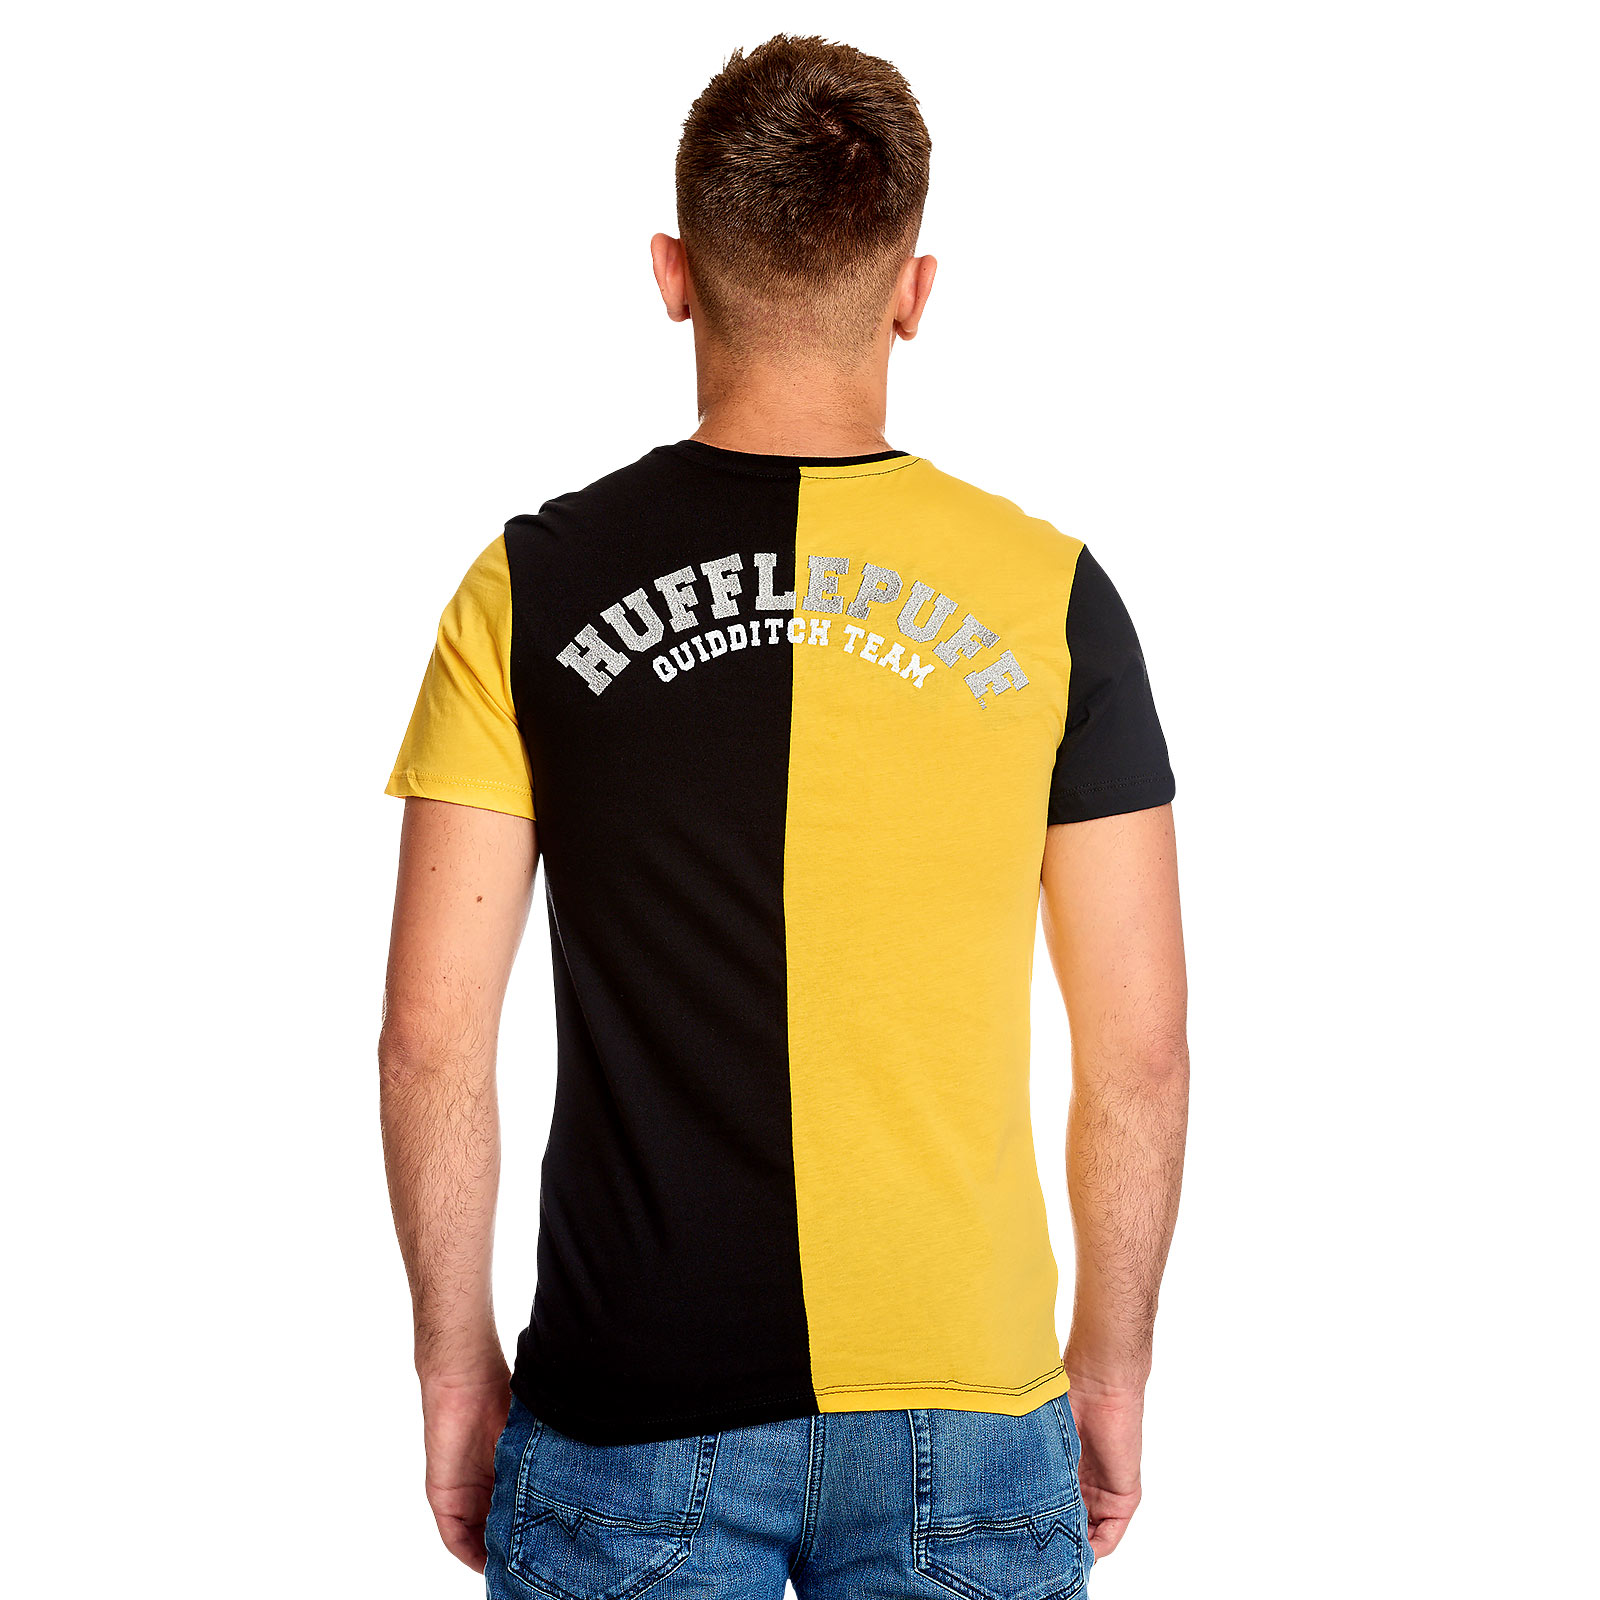 Harry Potter - Hufflepuff Toernooi T-shirt geel-zwart